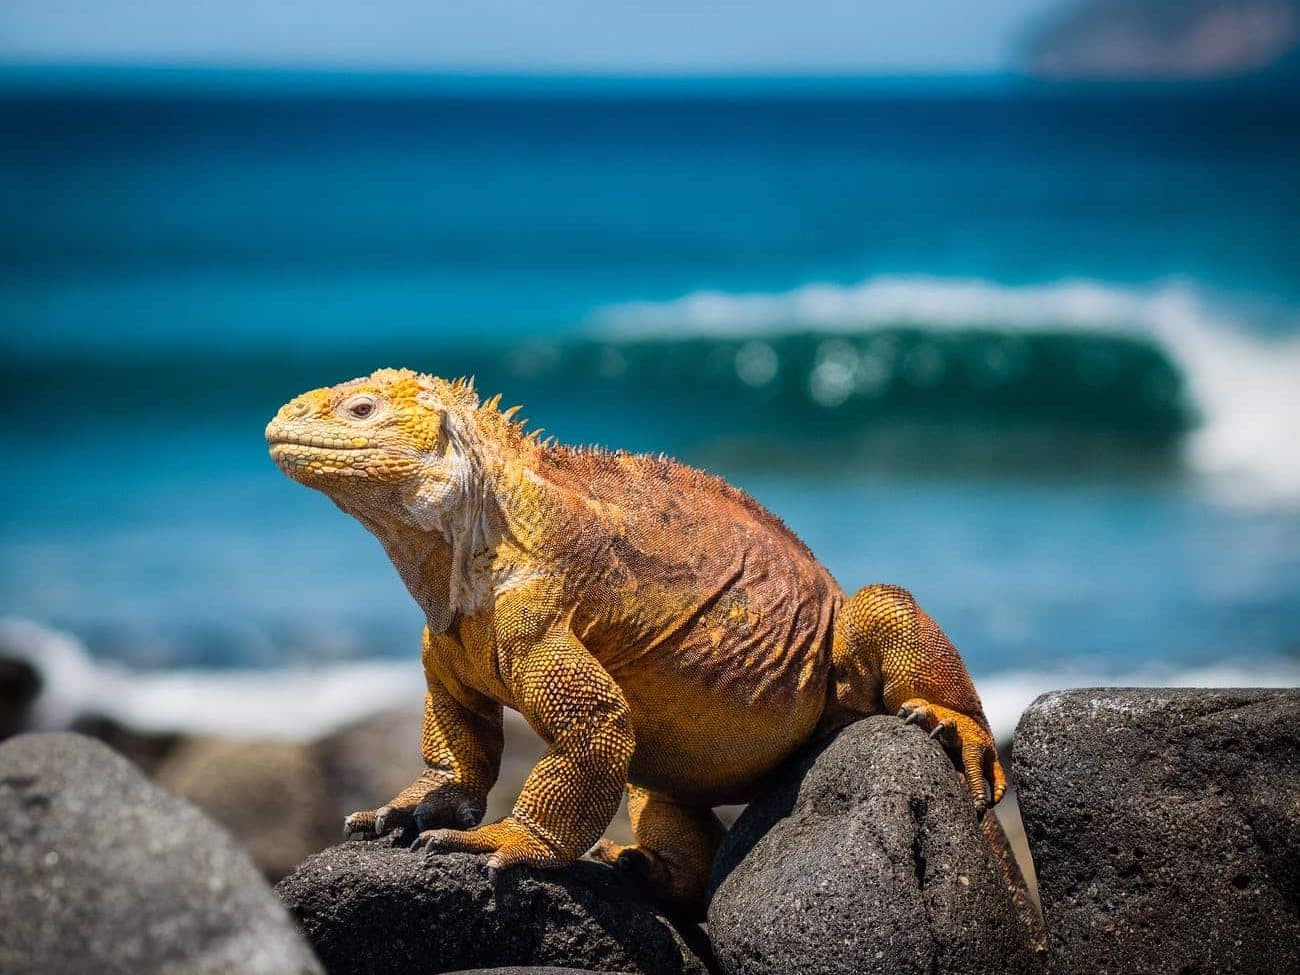 orange iguana standing on rocks Diese vulkanischen Inseln beherbergen eine erstaunliche Vielfalt an Tieren